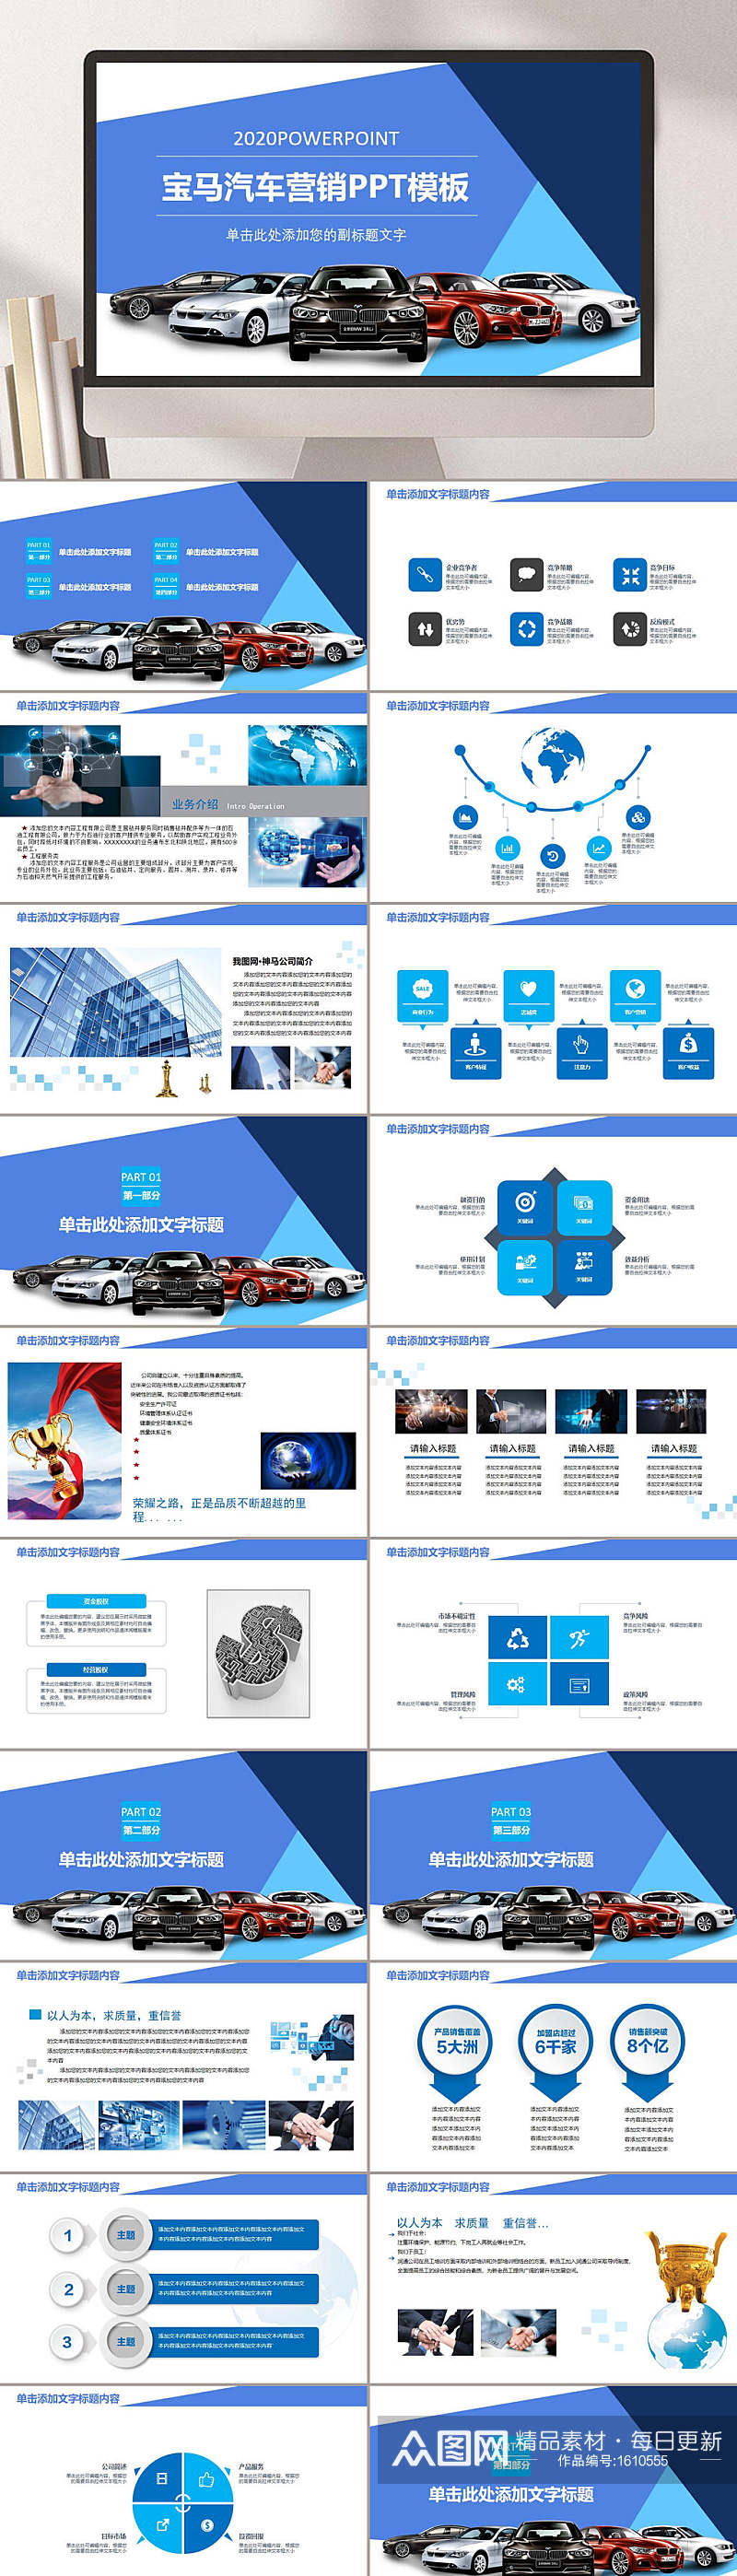 蓝色主题汽车行业营销PPT模板素材